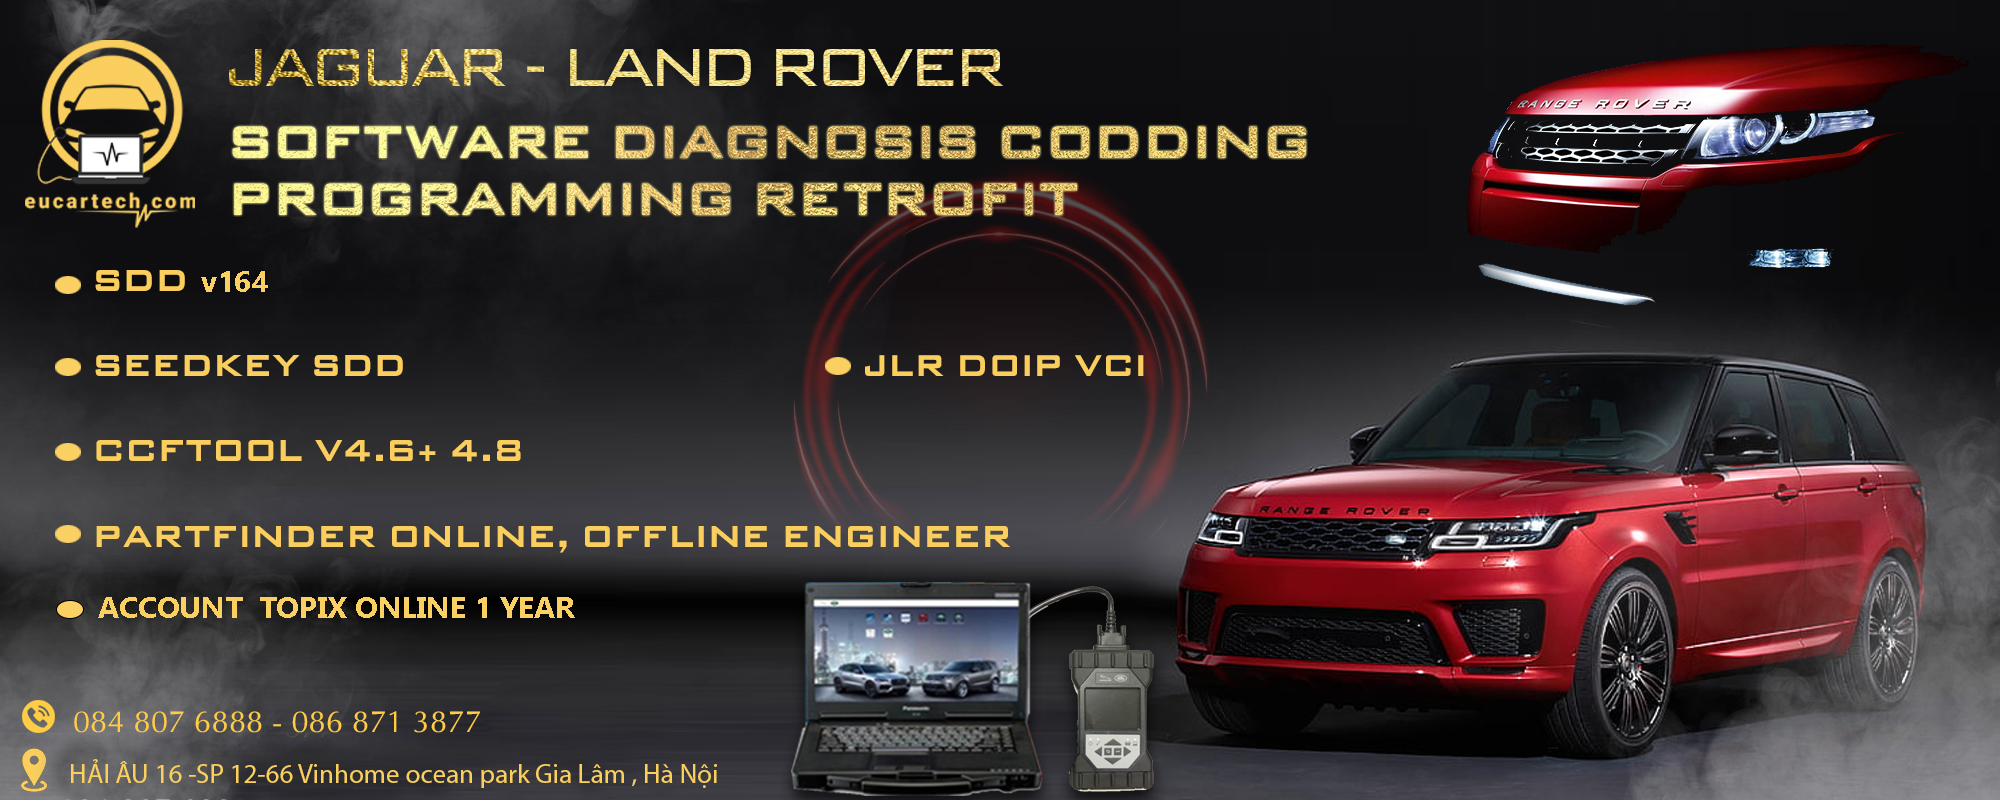 Cài đặt các phần mềm chẩn đoán Landrover Jaguar SDD/Seedkey/CCFTool/PartFinder/JLR Doip VCI